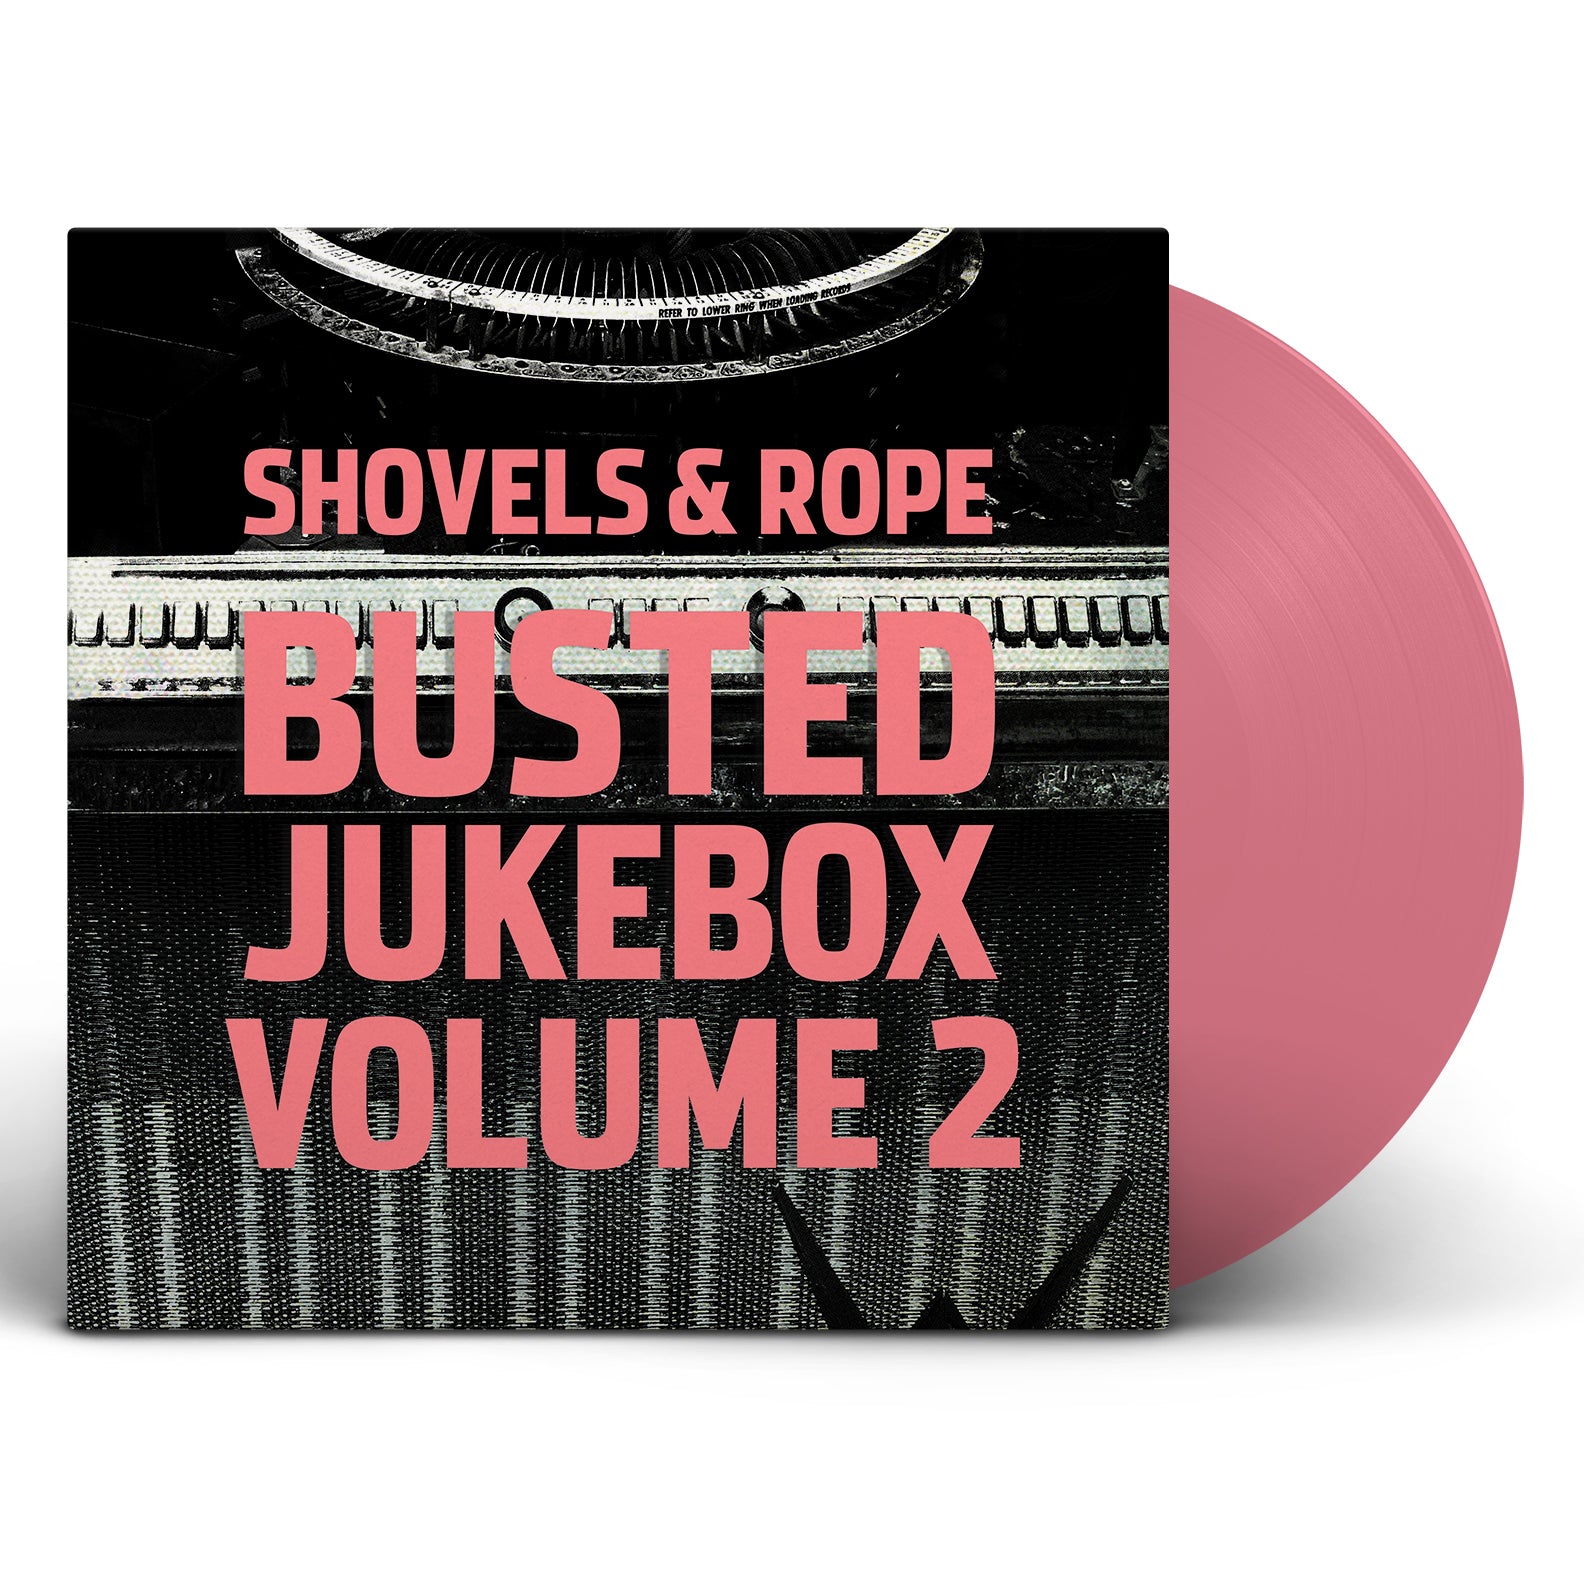 Shovels & Rope - Busted Jukebox Volume 2 [Vinyl]